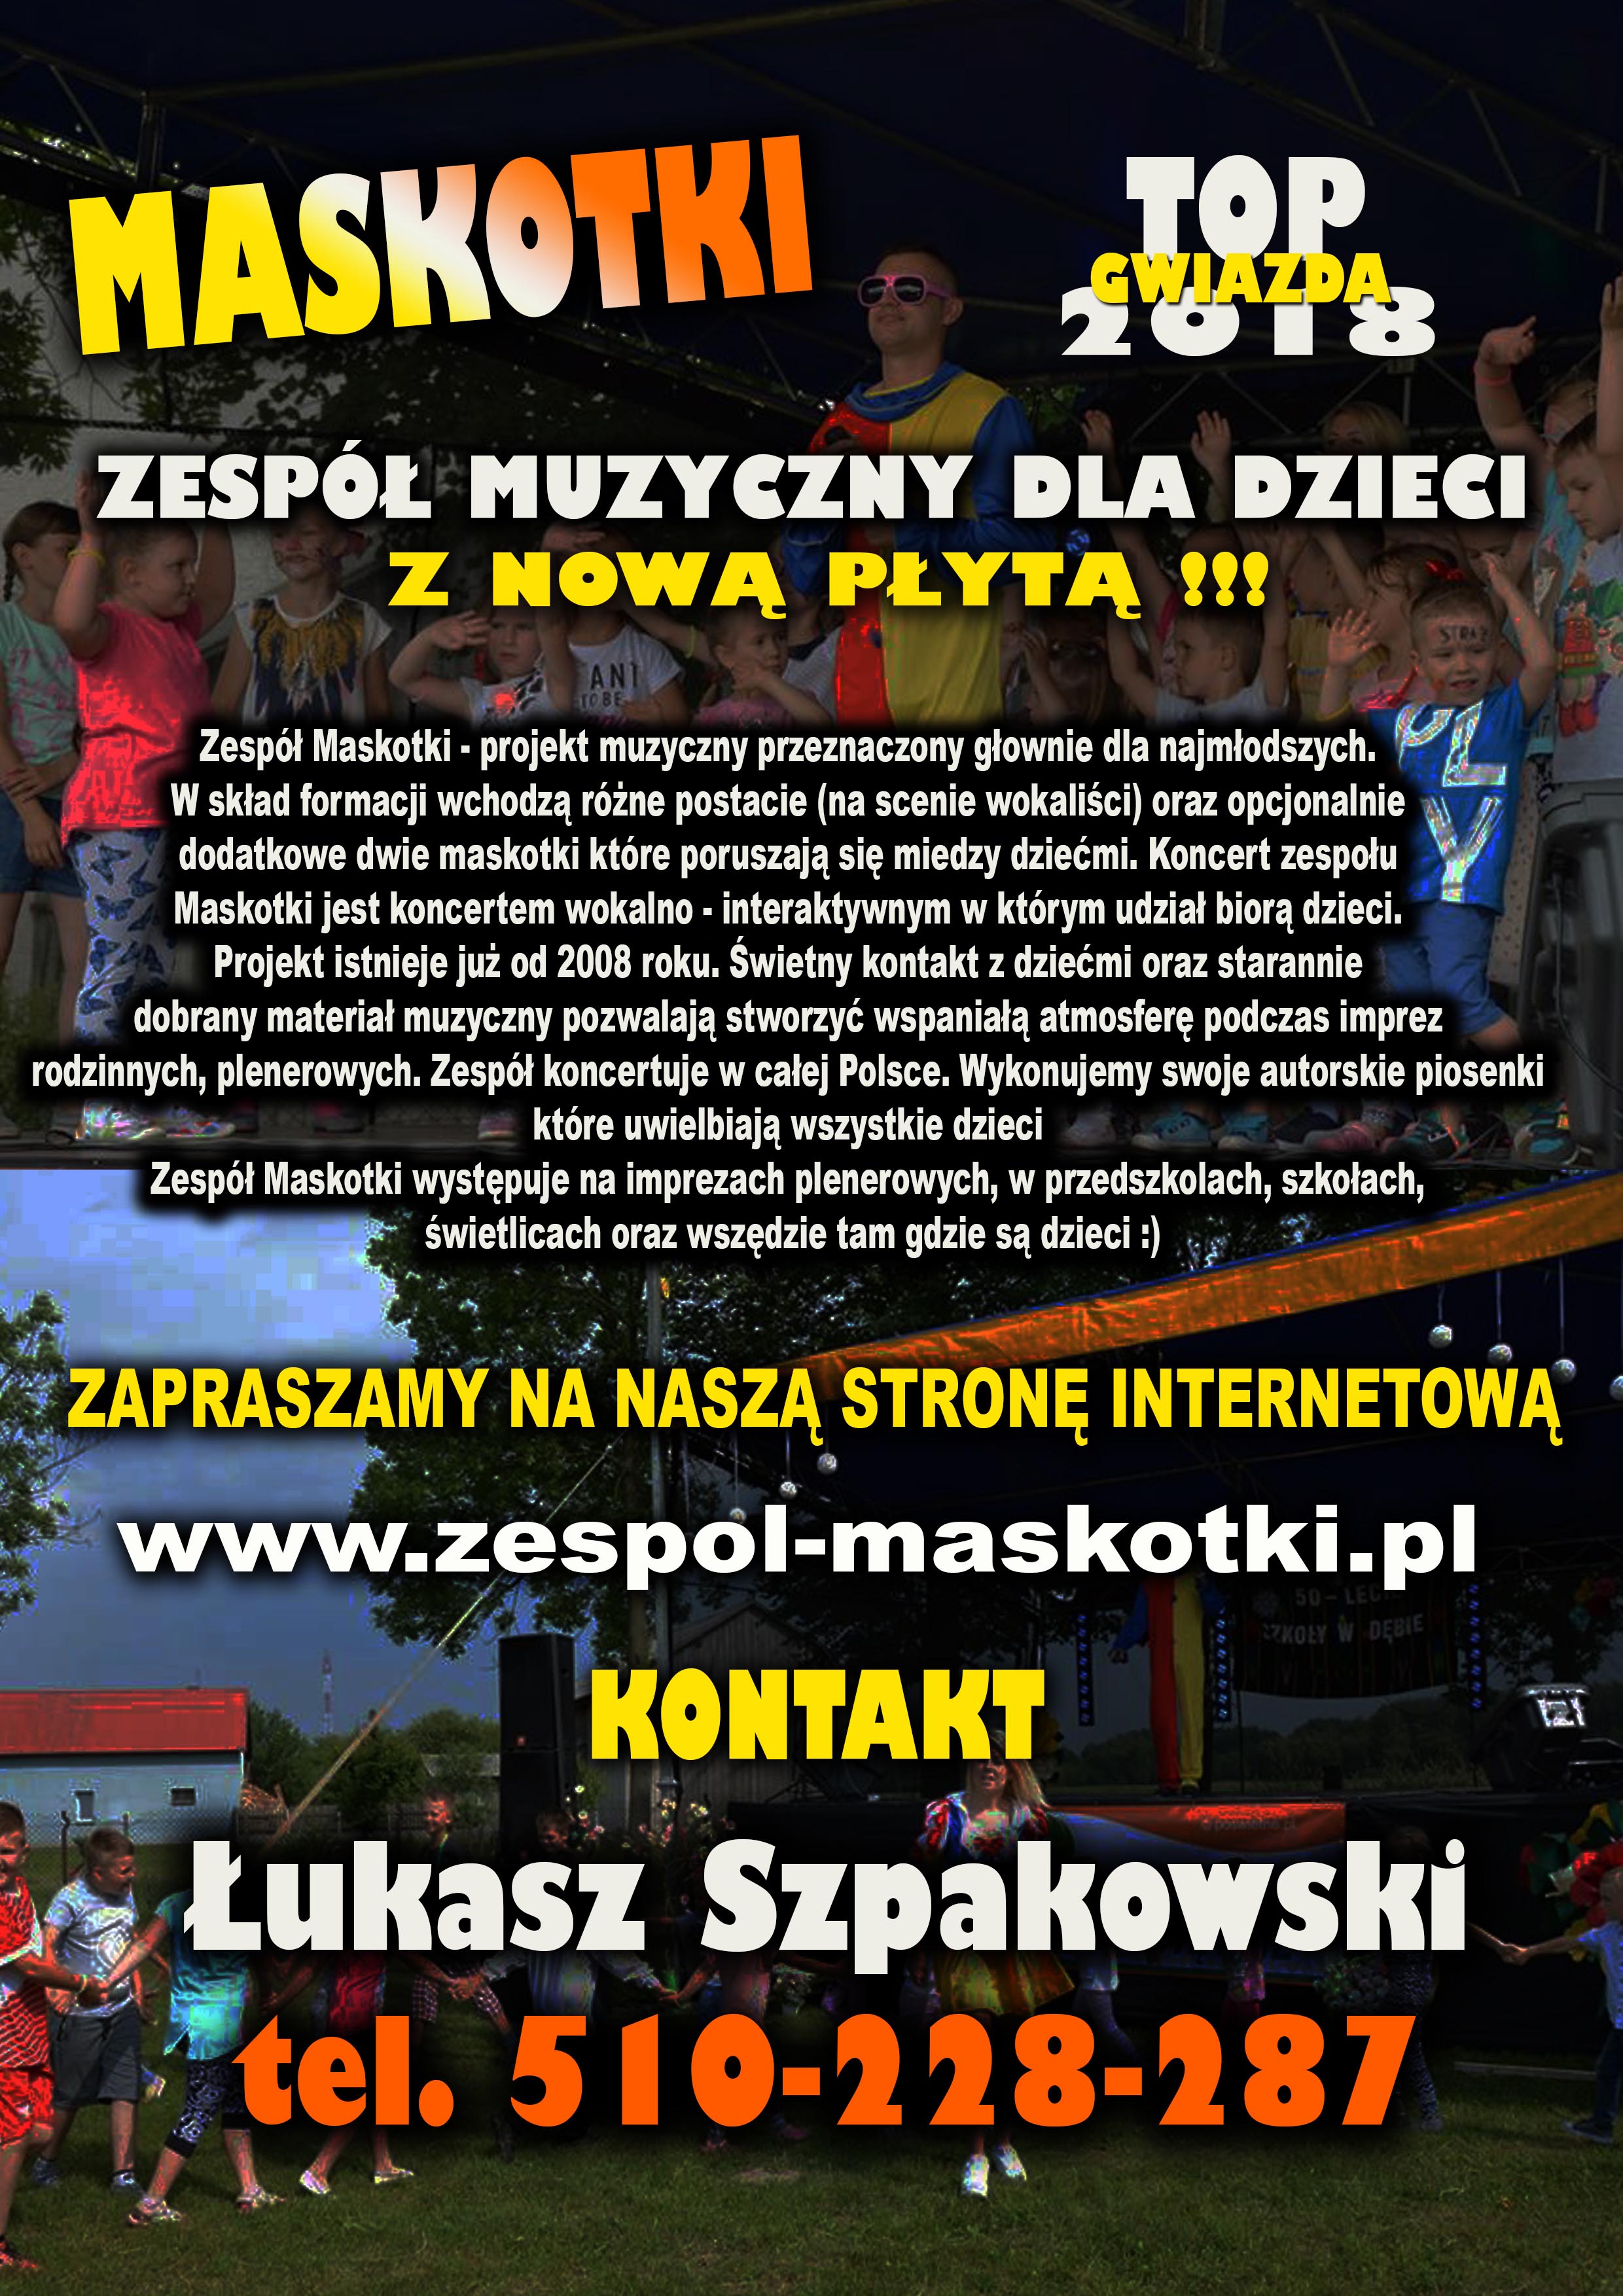 ZESPOL MASKOTKI OFERTA 2